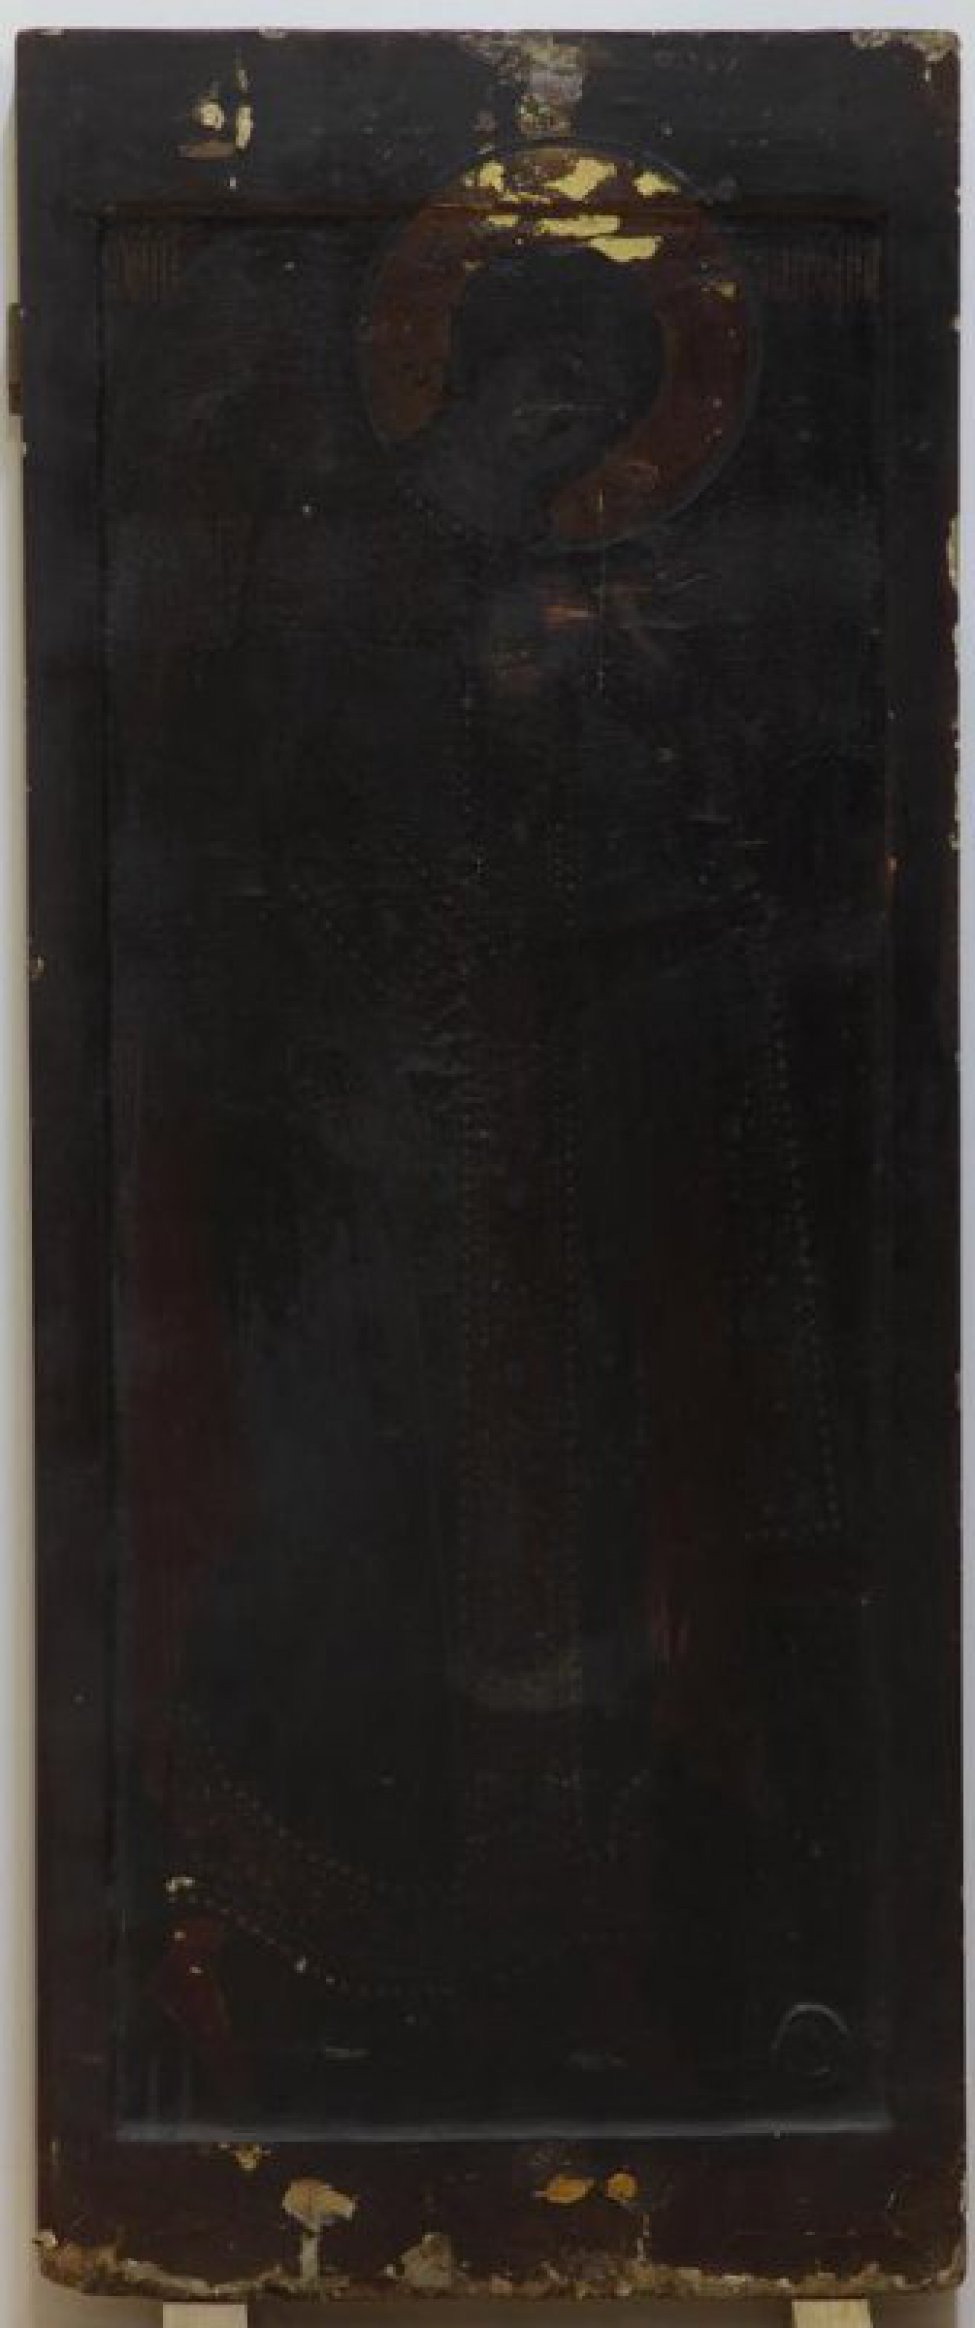 Доска: доска с ковчегом, с двумя врезными разностороннеми шпонками.
Изображает Архангела Михаила в рост, лицо и фигура повернуты в 3/4 влево. Цвет из-за потемневшей олифы неразличим.